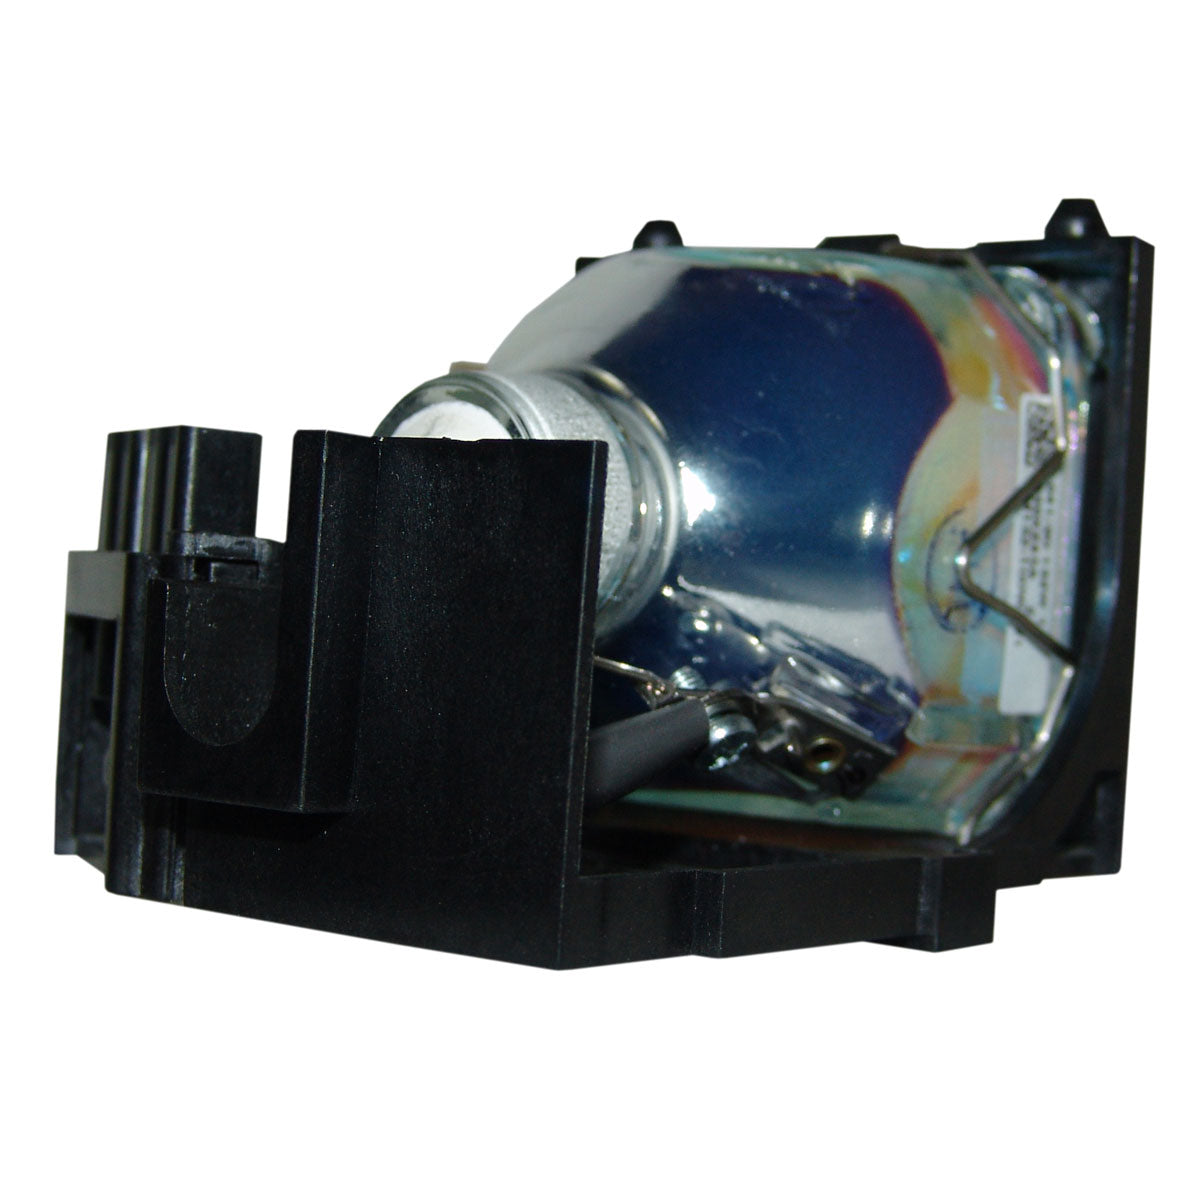 Dukane 456-224 Osram Projector Lamp Module